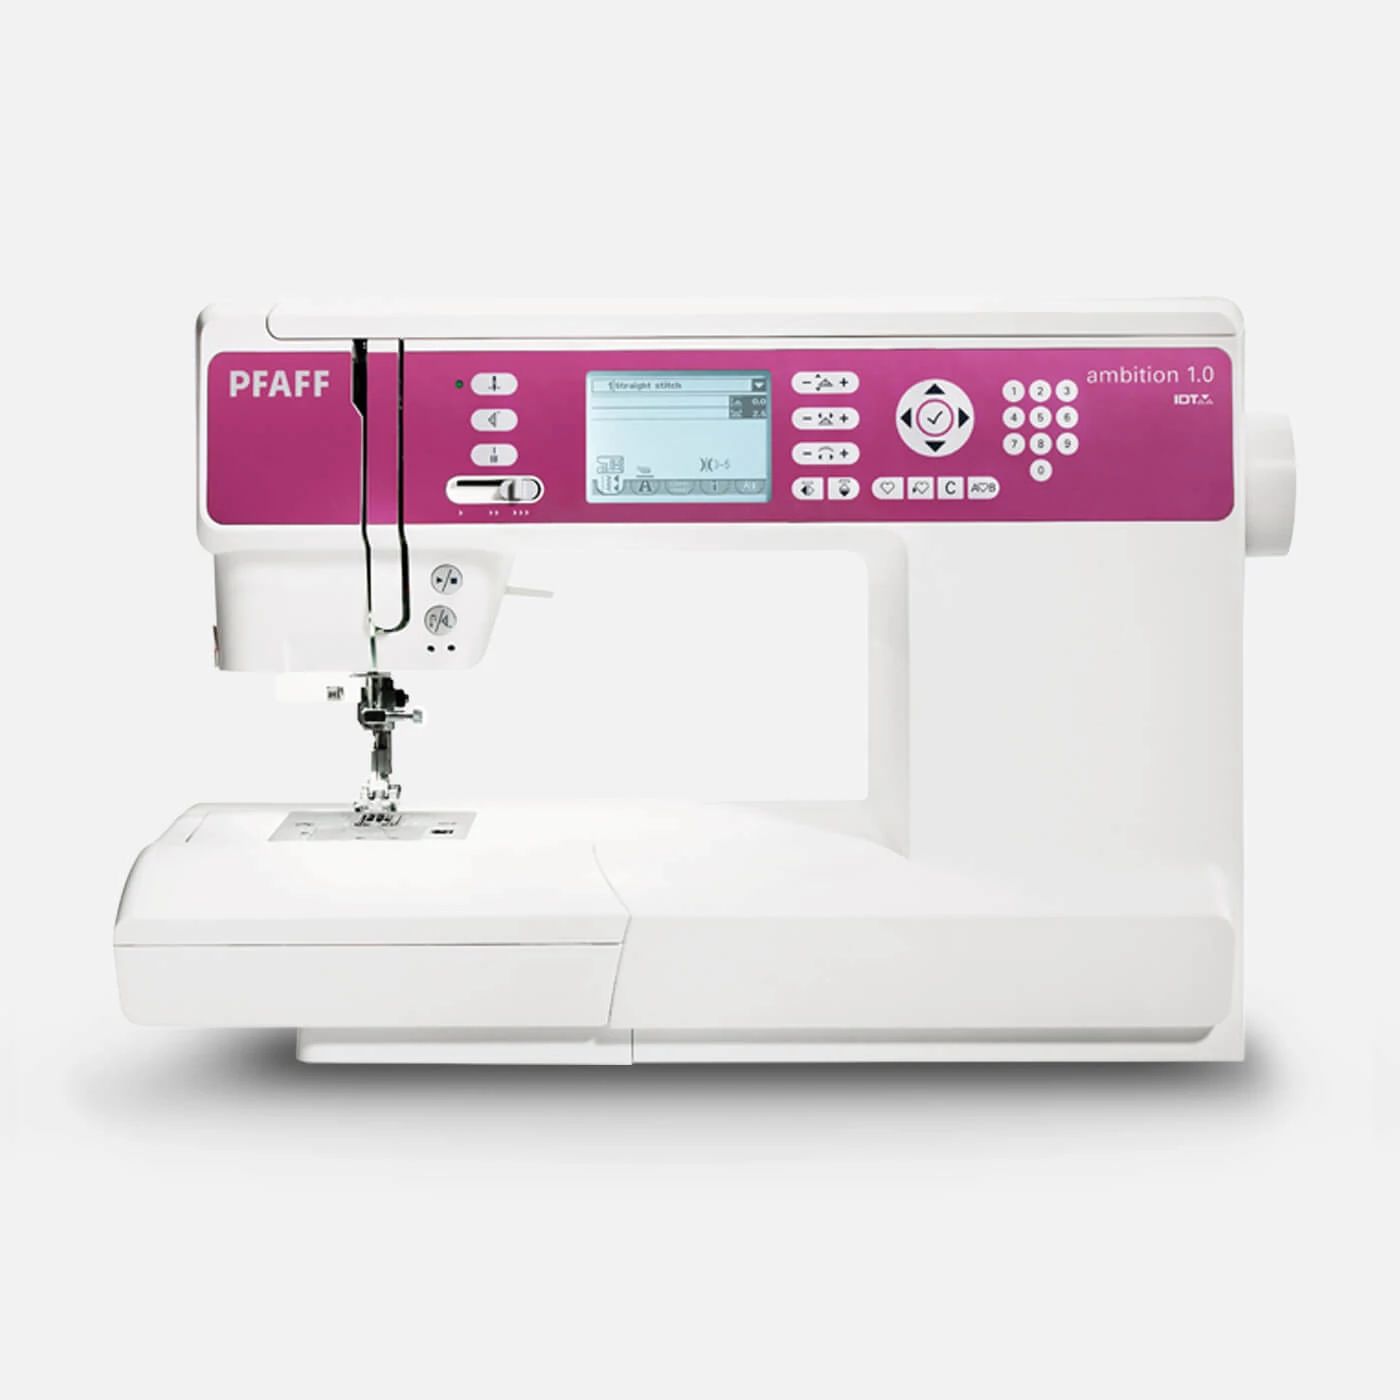 ambition™ 1.0 Sewing Machine